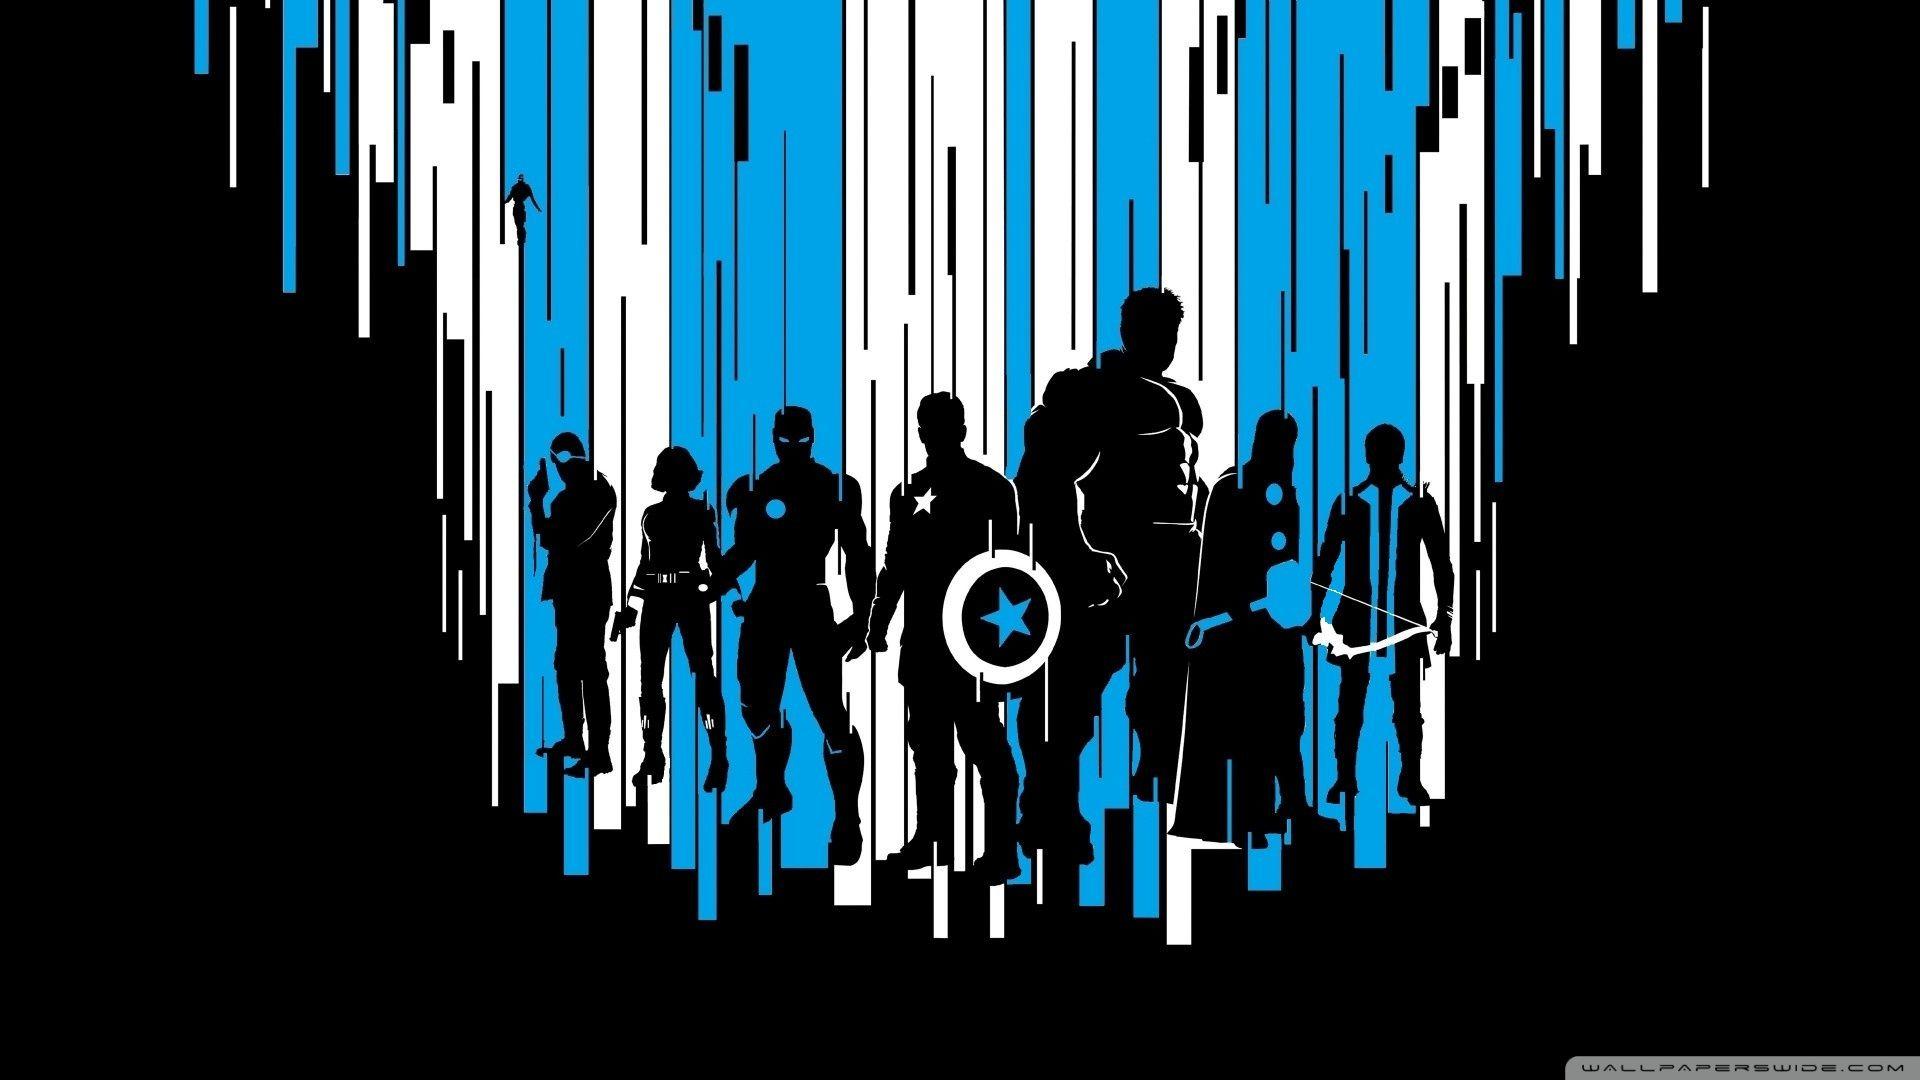 avengers symbol wallpaper